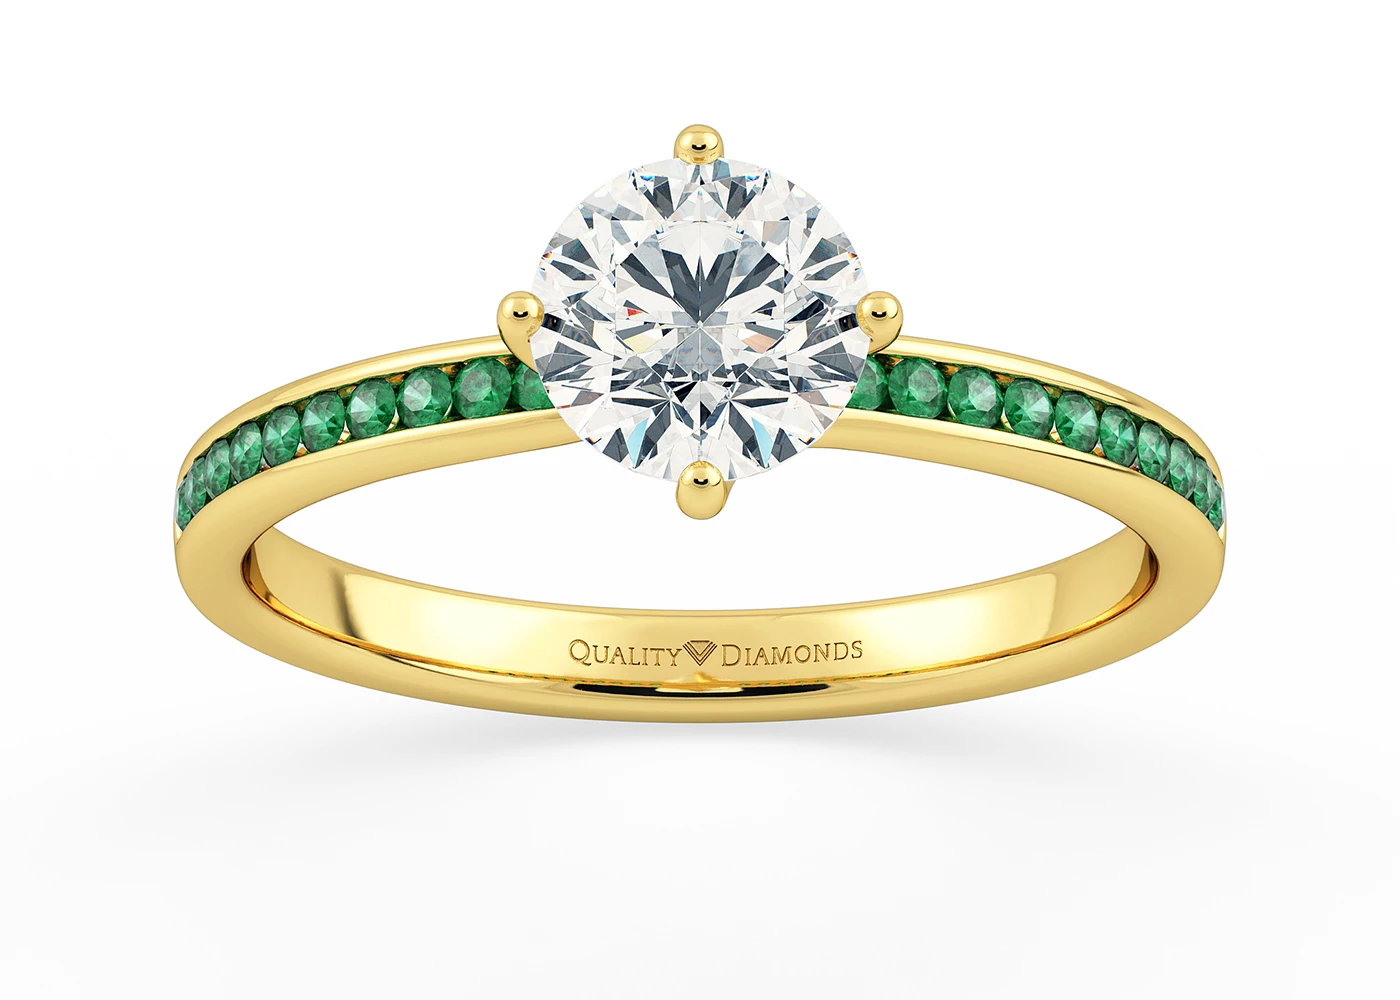 Emerald Set Round Brilliant Abbraccio Diamond Ring in 18K Yellow Gold